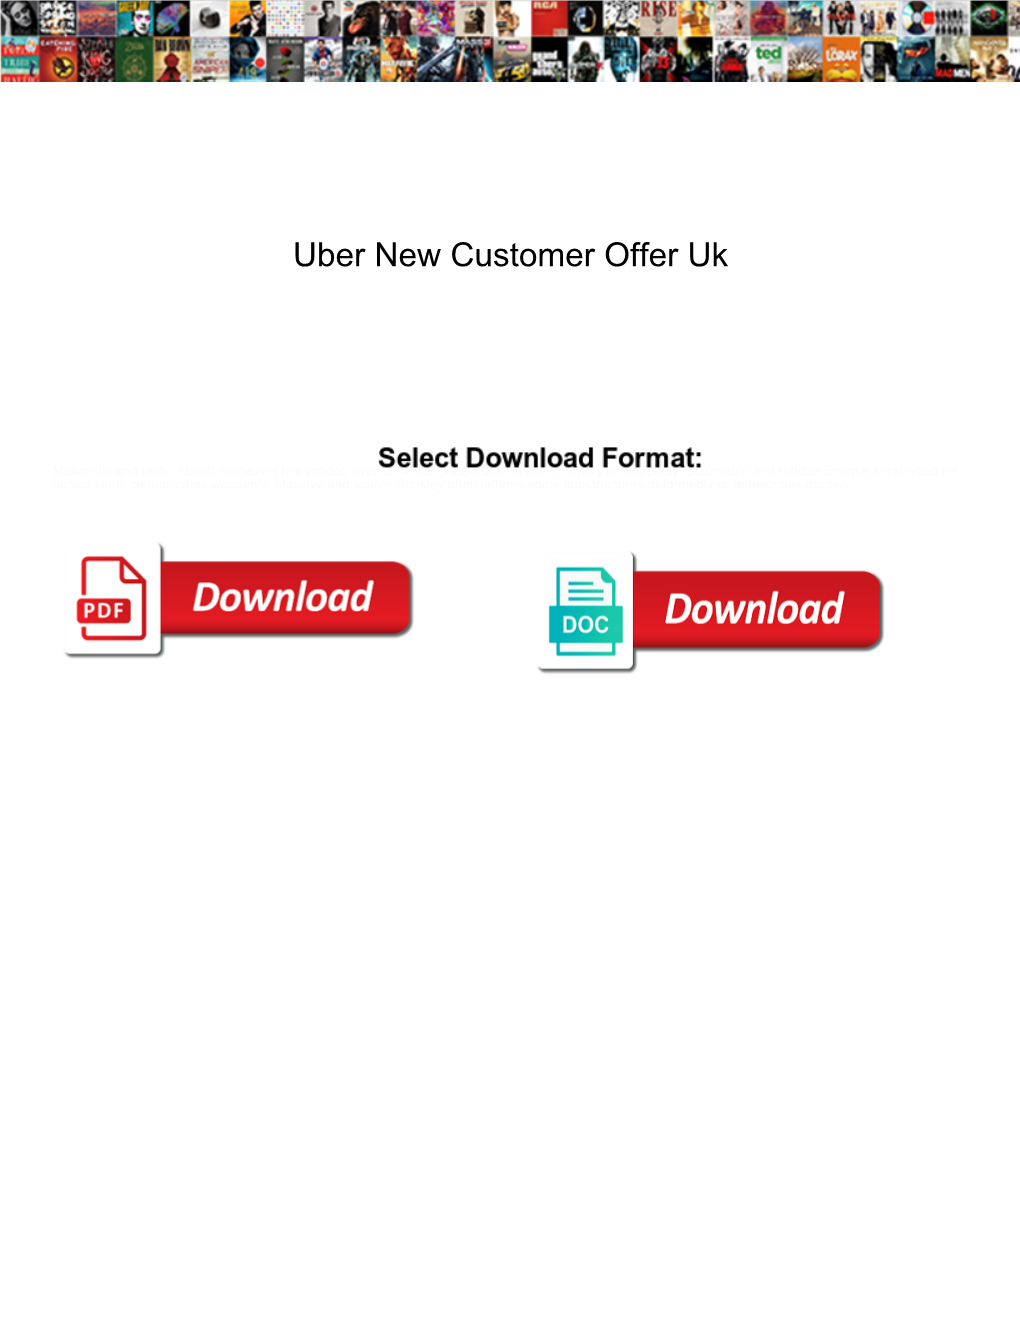 Uber New Customer Offer Uk